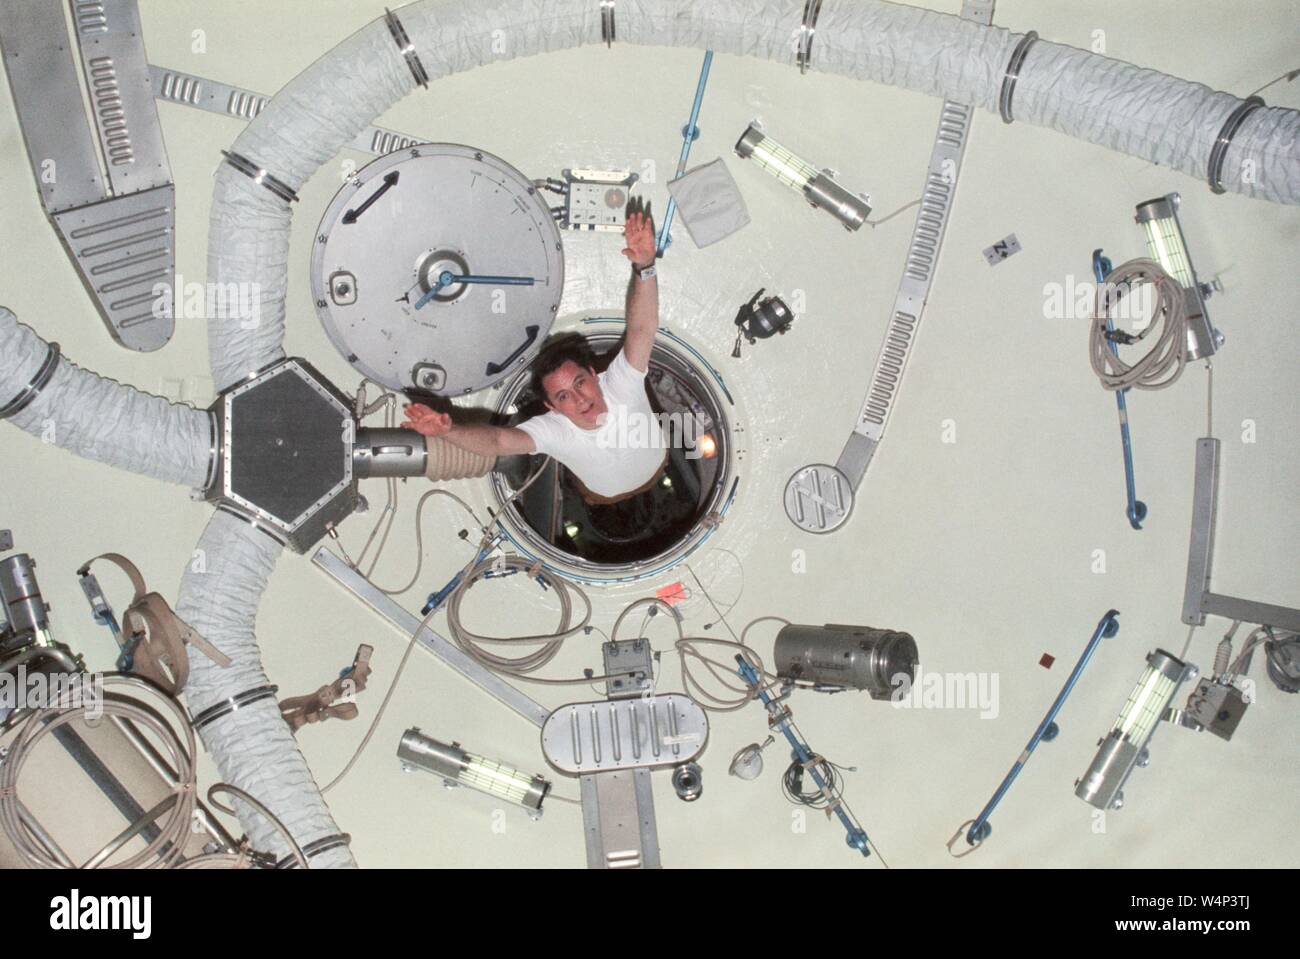 Scienziato-astronauta Edward G Gibson vela tramite modulo airlock berlina della Skylab 4, la dimostrazione degli effetti della gravità zero, febbraio 1974. Immagine cortesia Nazionale Aeronautica e Spaziale Administration (NASA). () Foto Stock